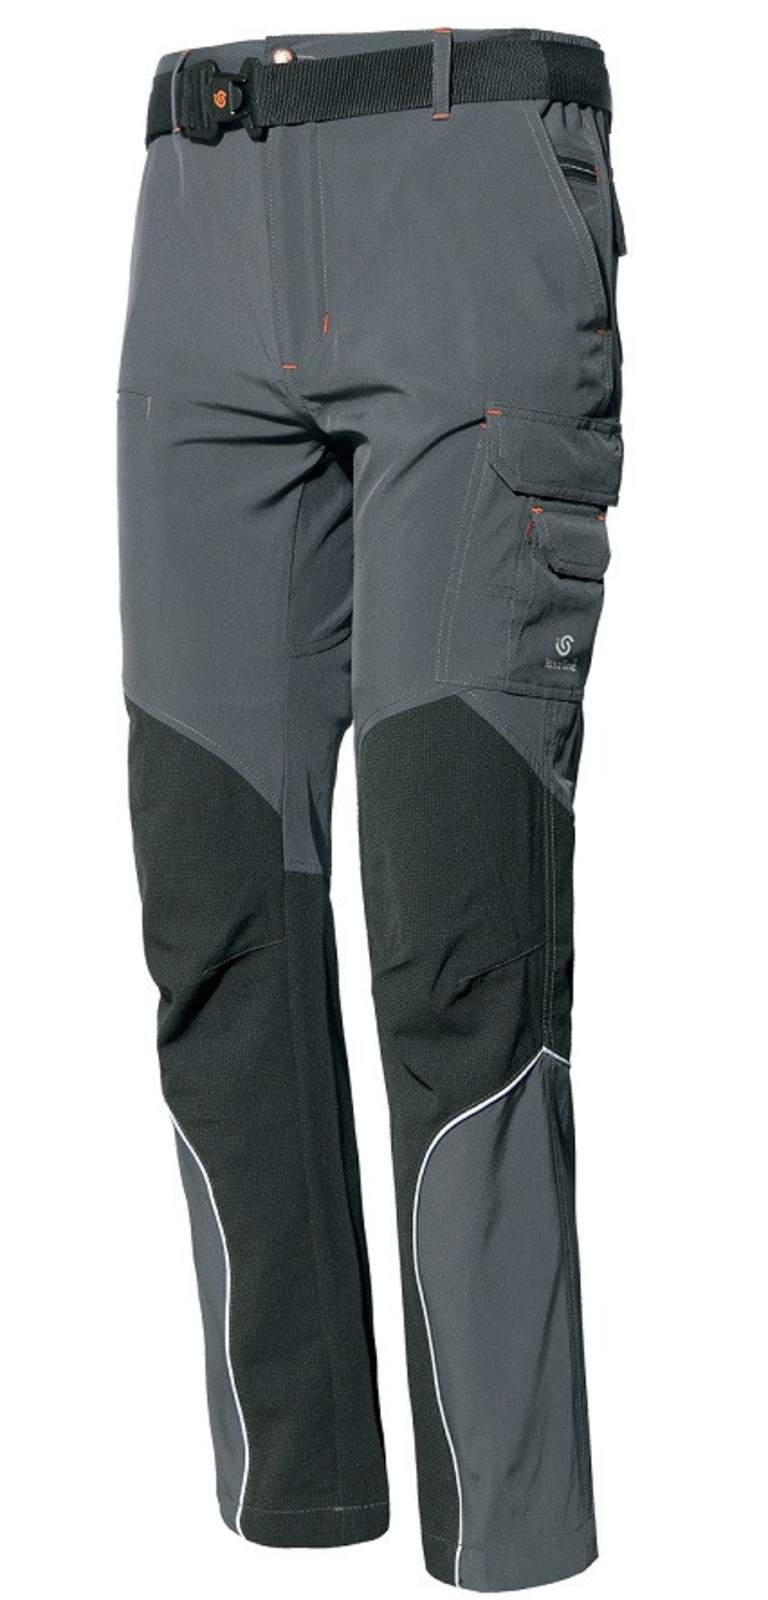 Tenké strečové softshellové nohavice ISSA Extreme Light - veľkosť: S, farba: sivá/čierna